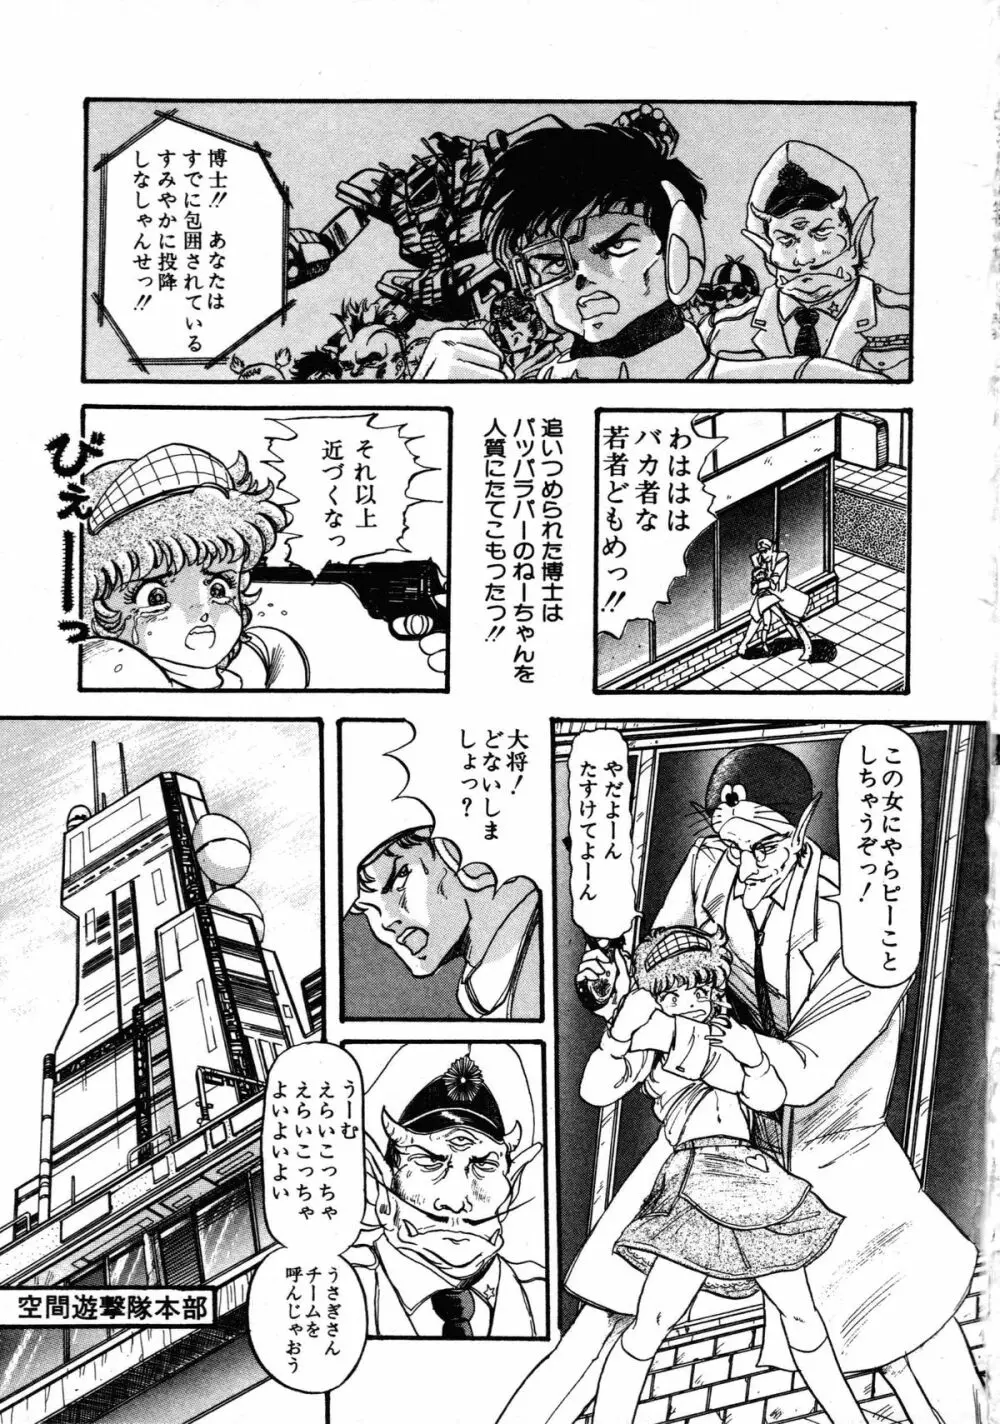 ロボット&美少女傑作選 レモン・ピープル1982-1986 185ページ